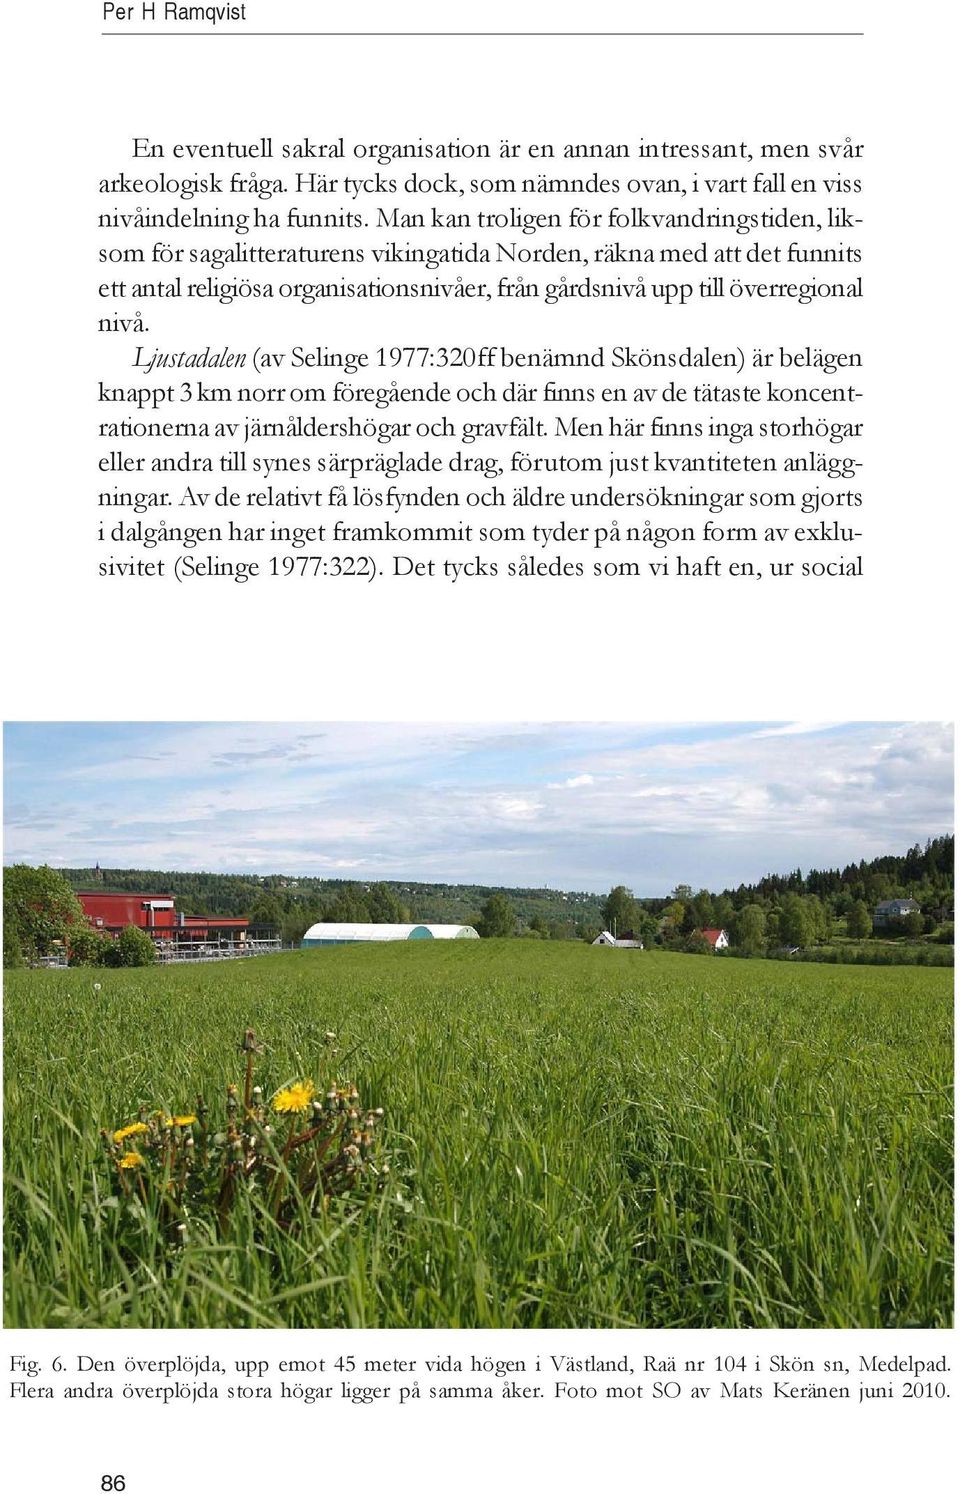 Ljustadalen (av Selinge 1977:320ff benämnd Skönsdalen) är belägen knappt 3 km norr om föregående och där finns en av de tätaste koncentrationerna av järnåldershögar och gravfält.